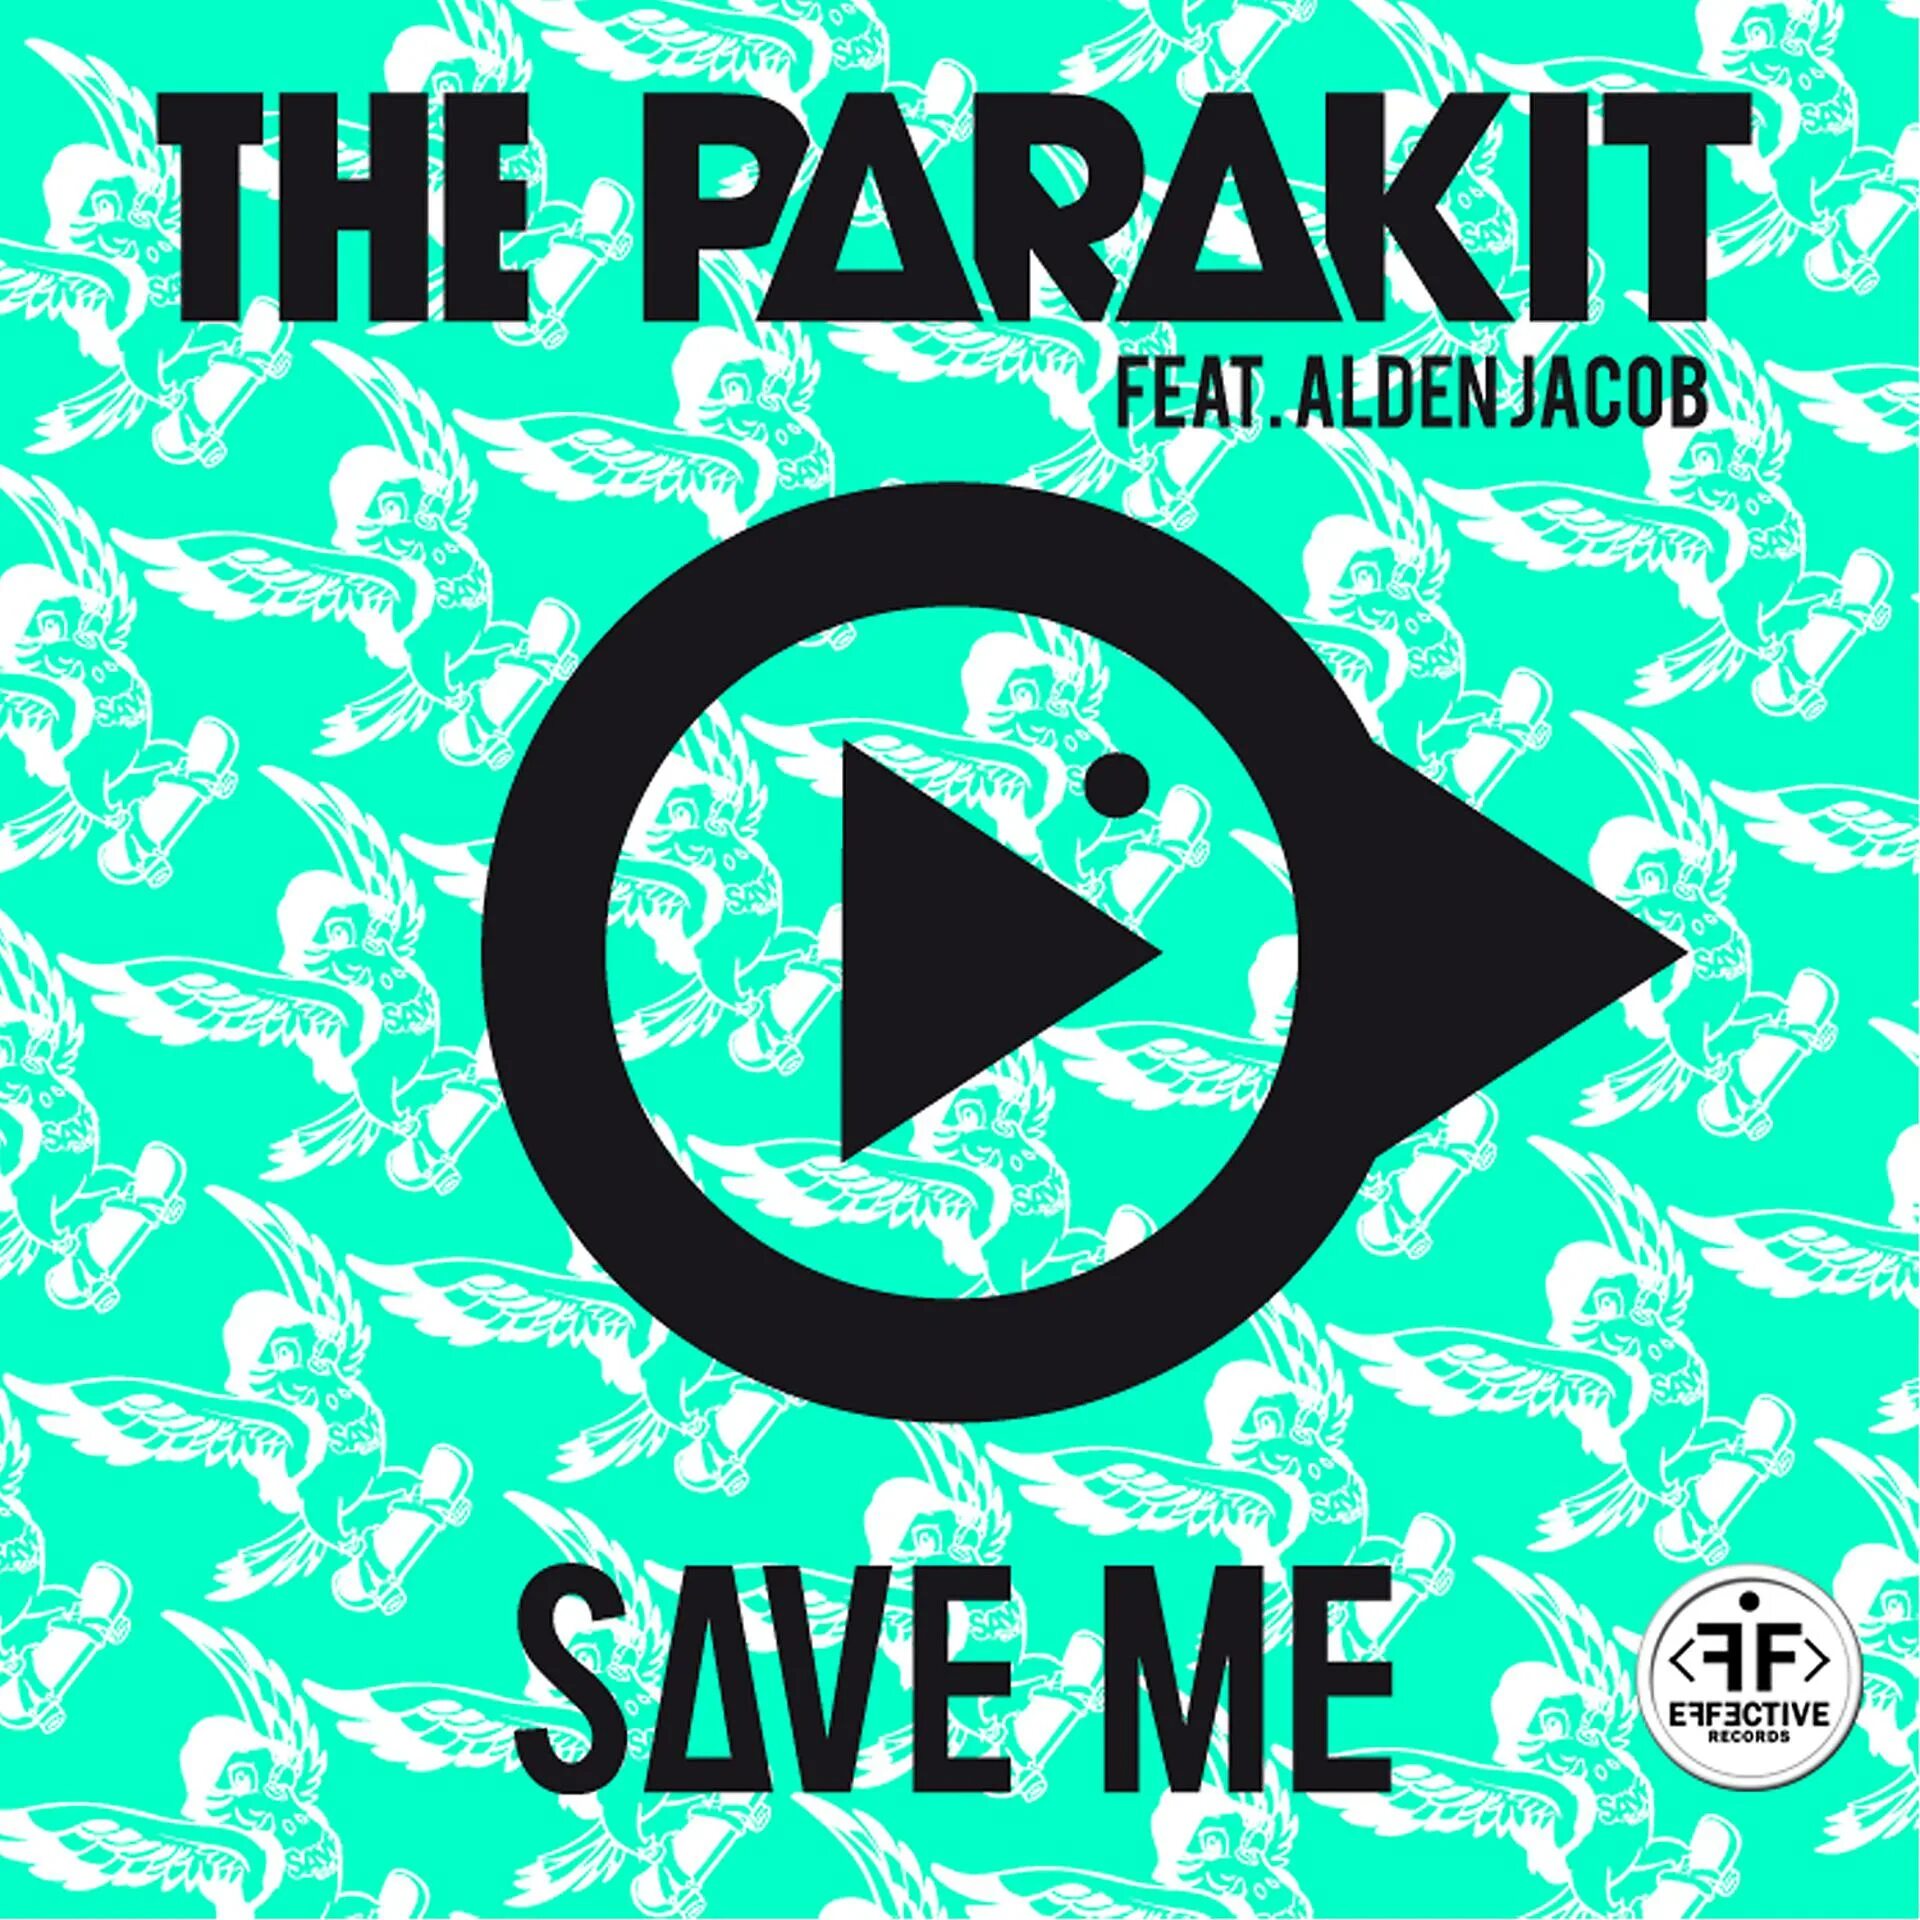 Jacob feat. The Parakit save me. Save me (feat. Alden Jacob). The Parakit, Alden Jacob save me. The Parakit - save me (feat. Alden Jacob Anchalee).